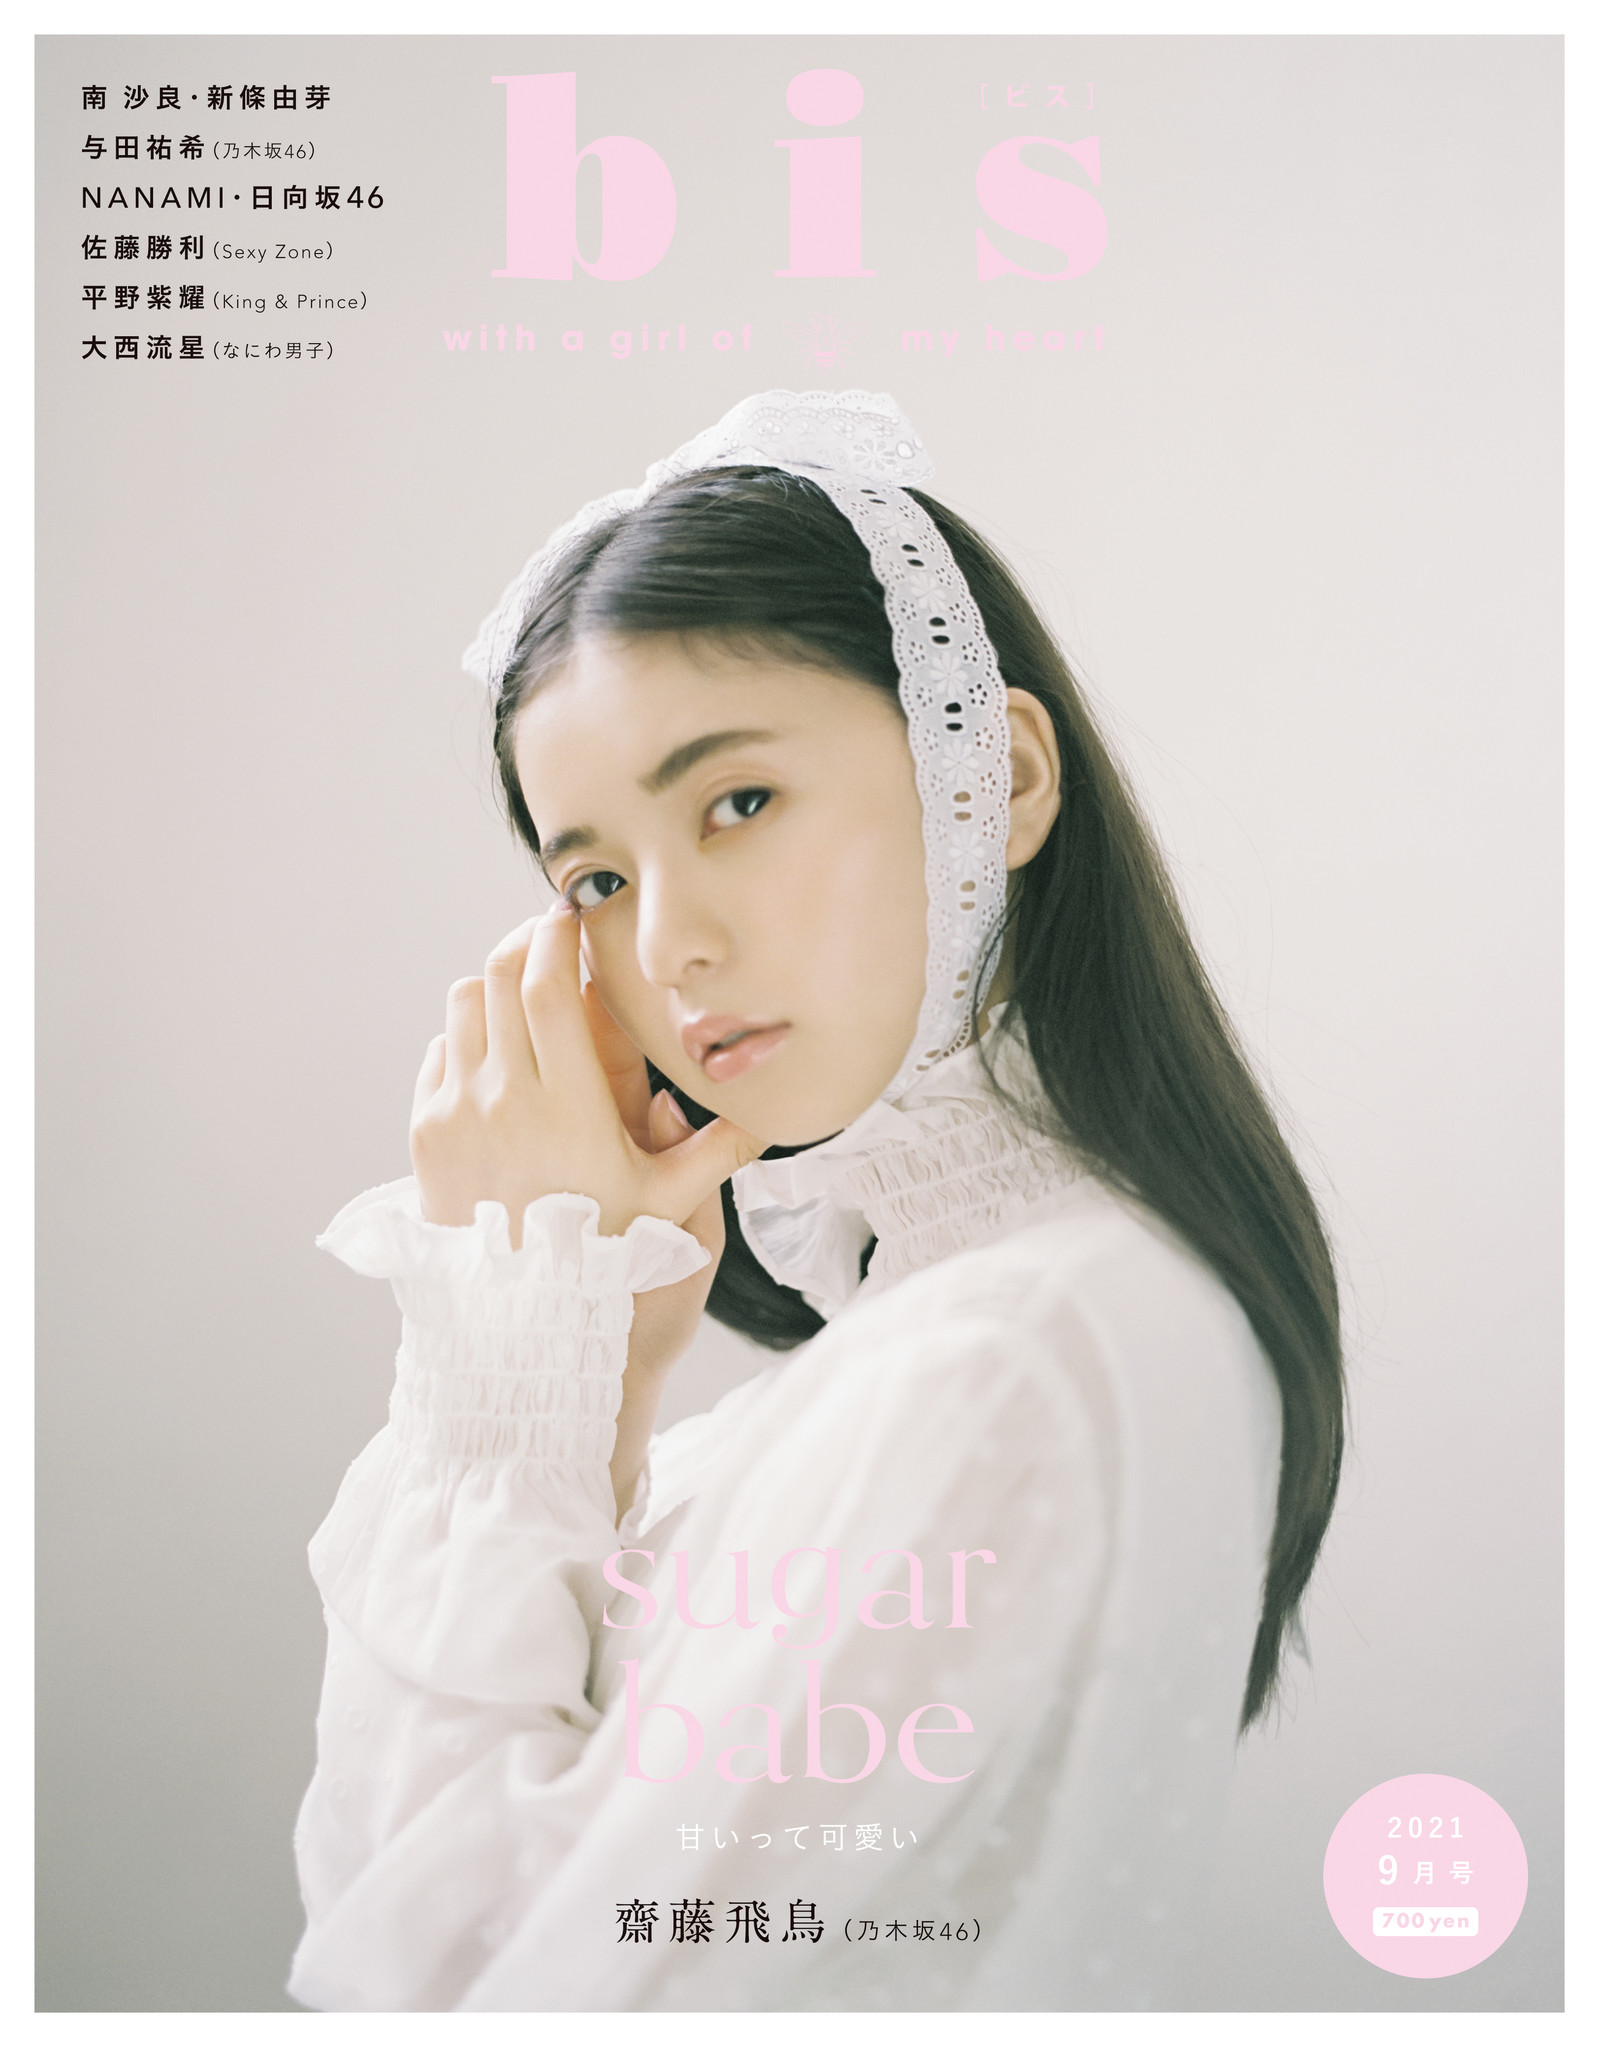 表紙・齋藤飛鳥をはじめアイドルや人気モデルが総出演した充実のラインナップ! 7月30日(金)発売の『bis』2021年9月号は"Sweet"を